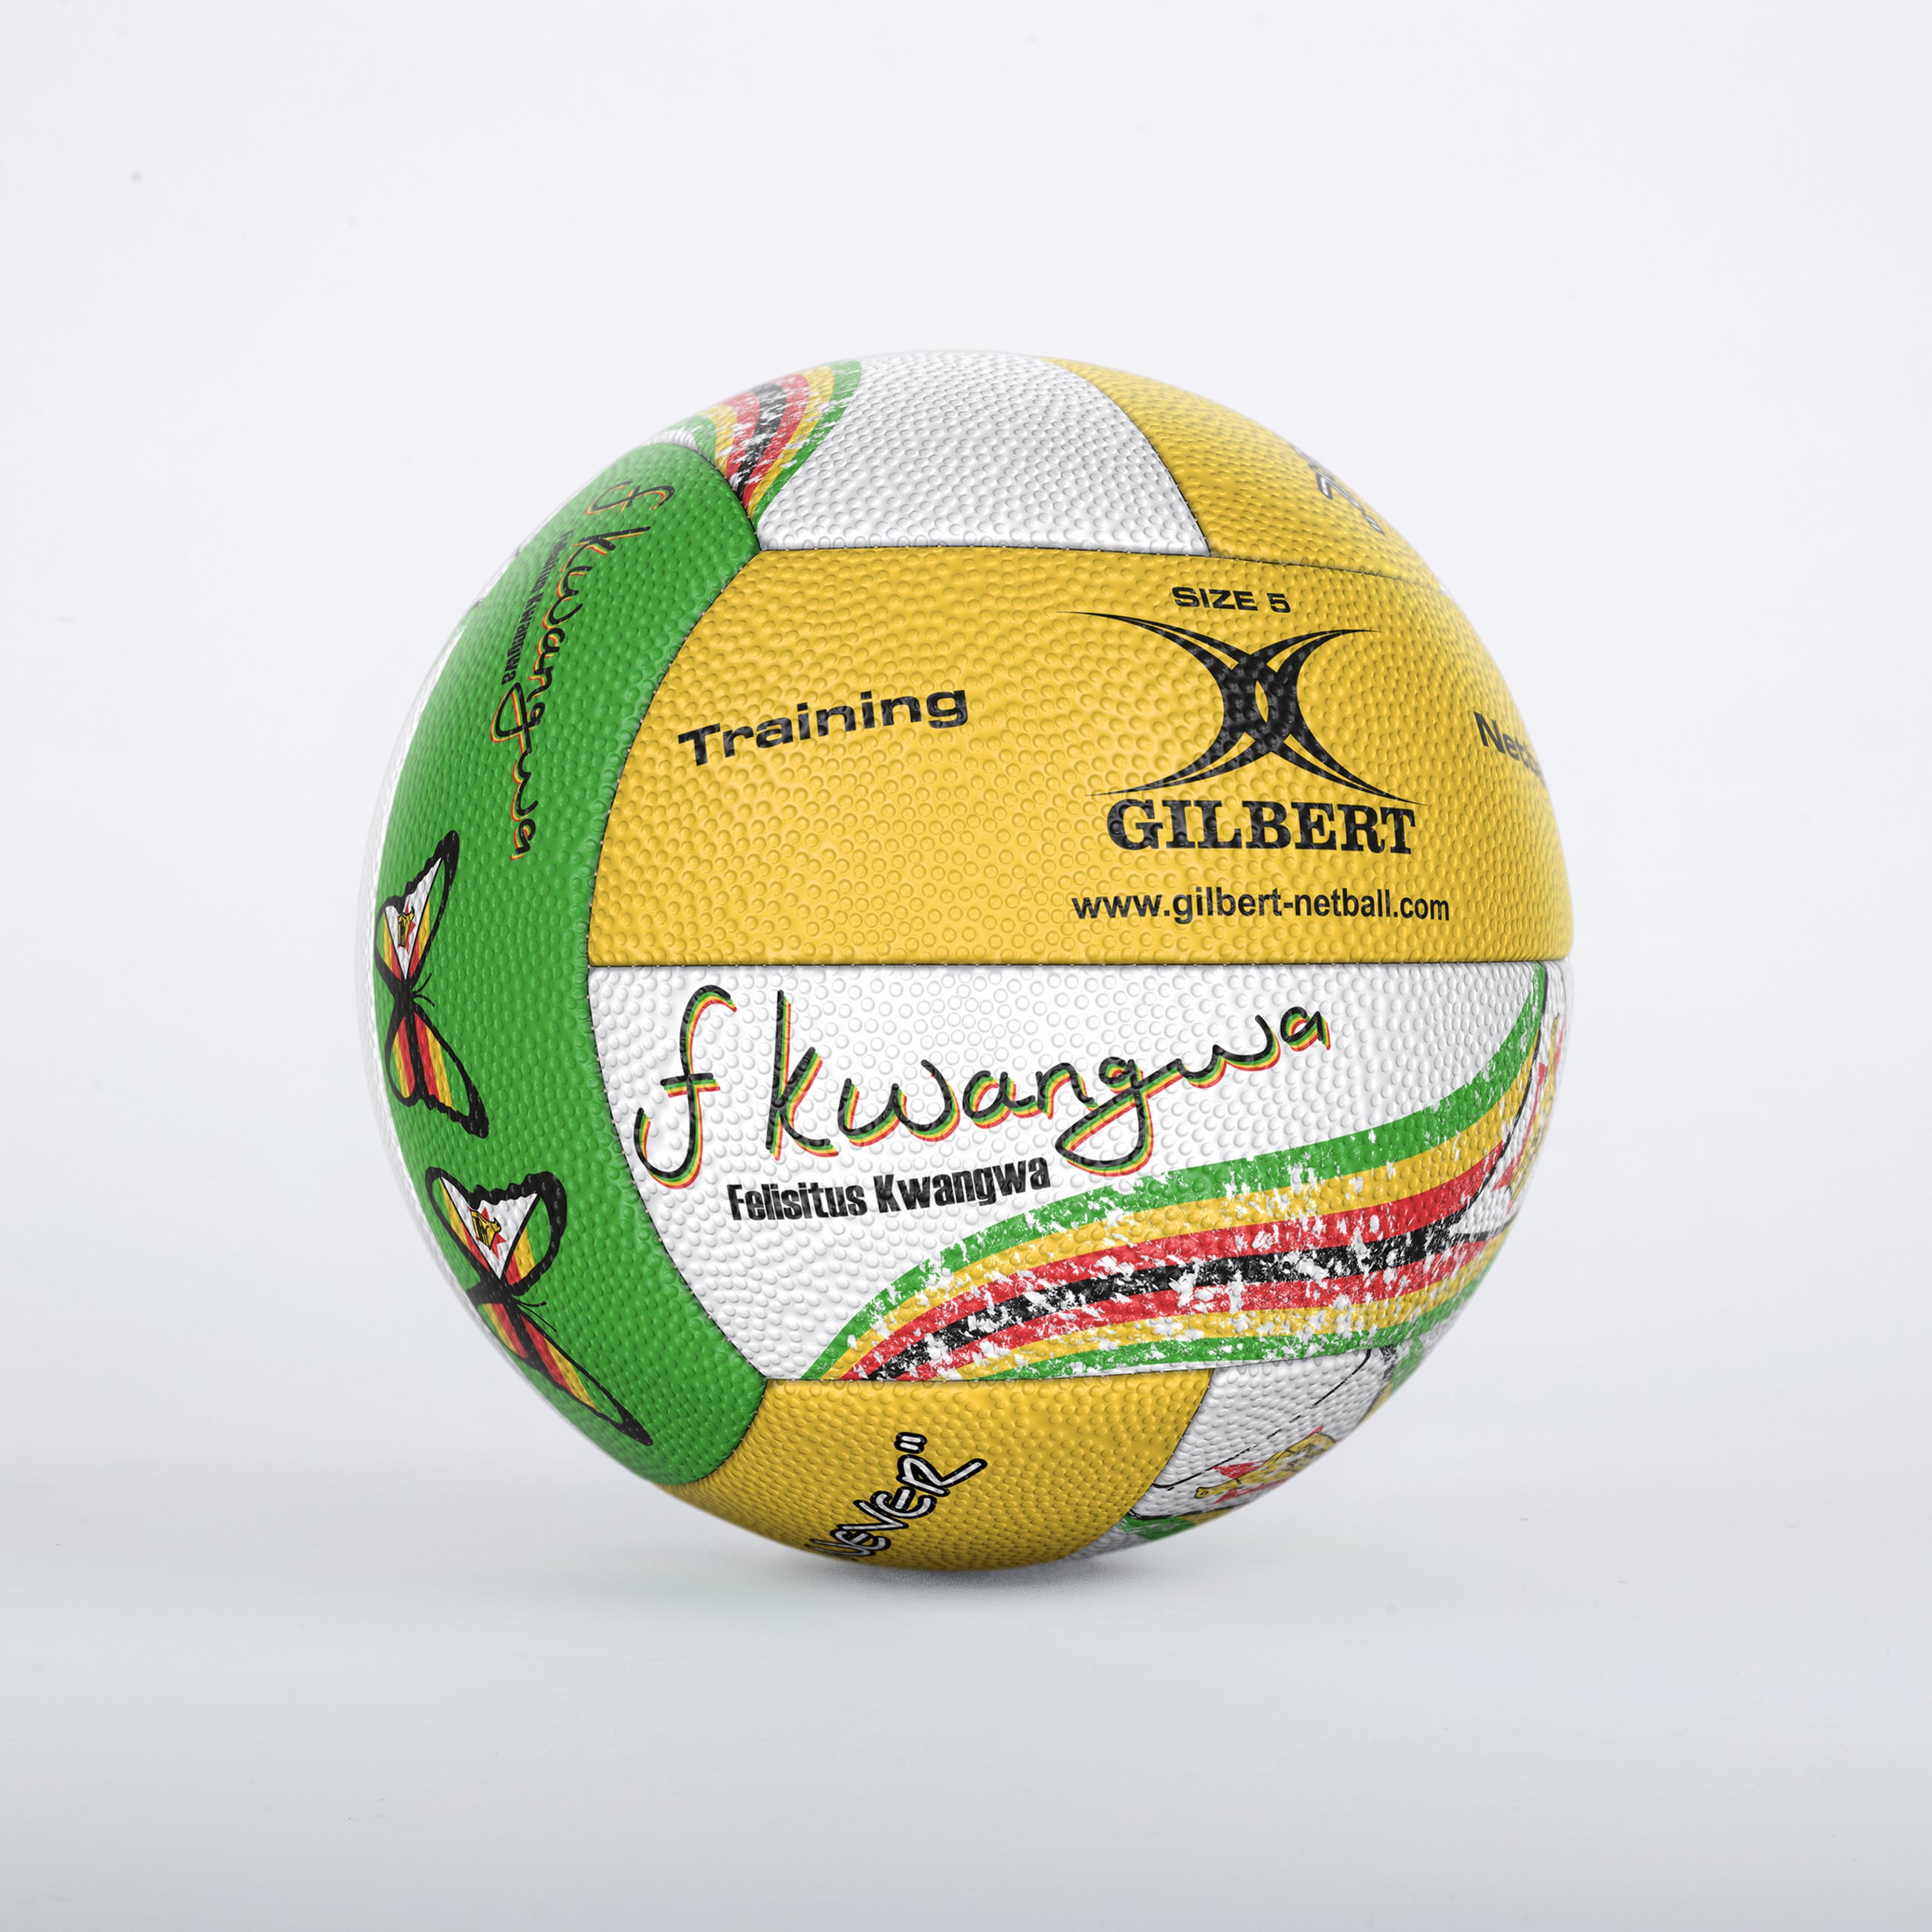 Felisitus Kwangwa Signature Netball